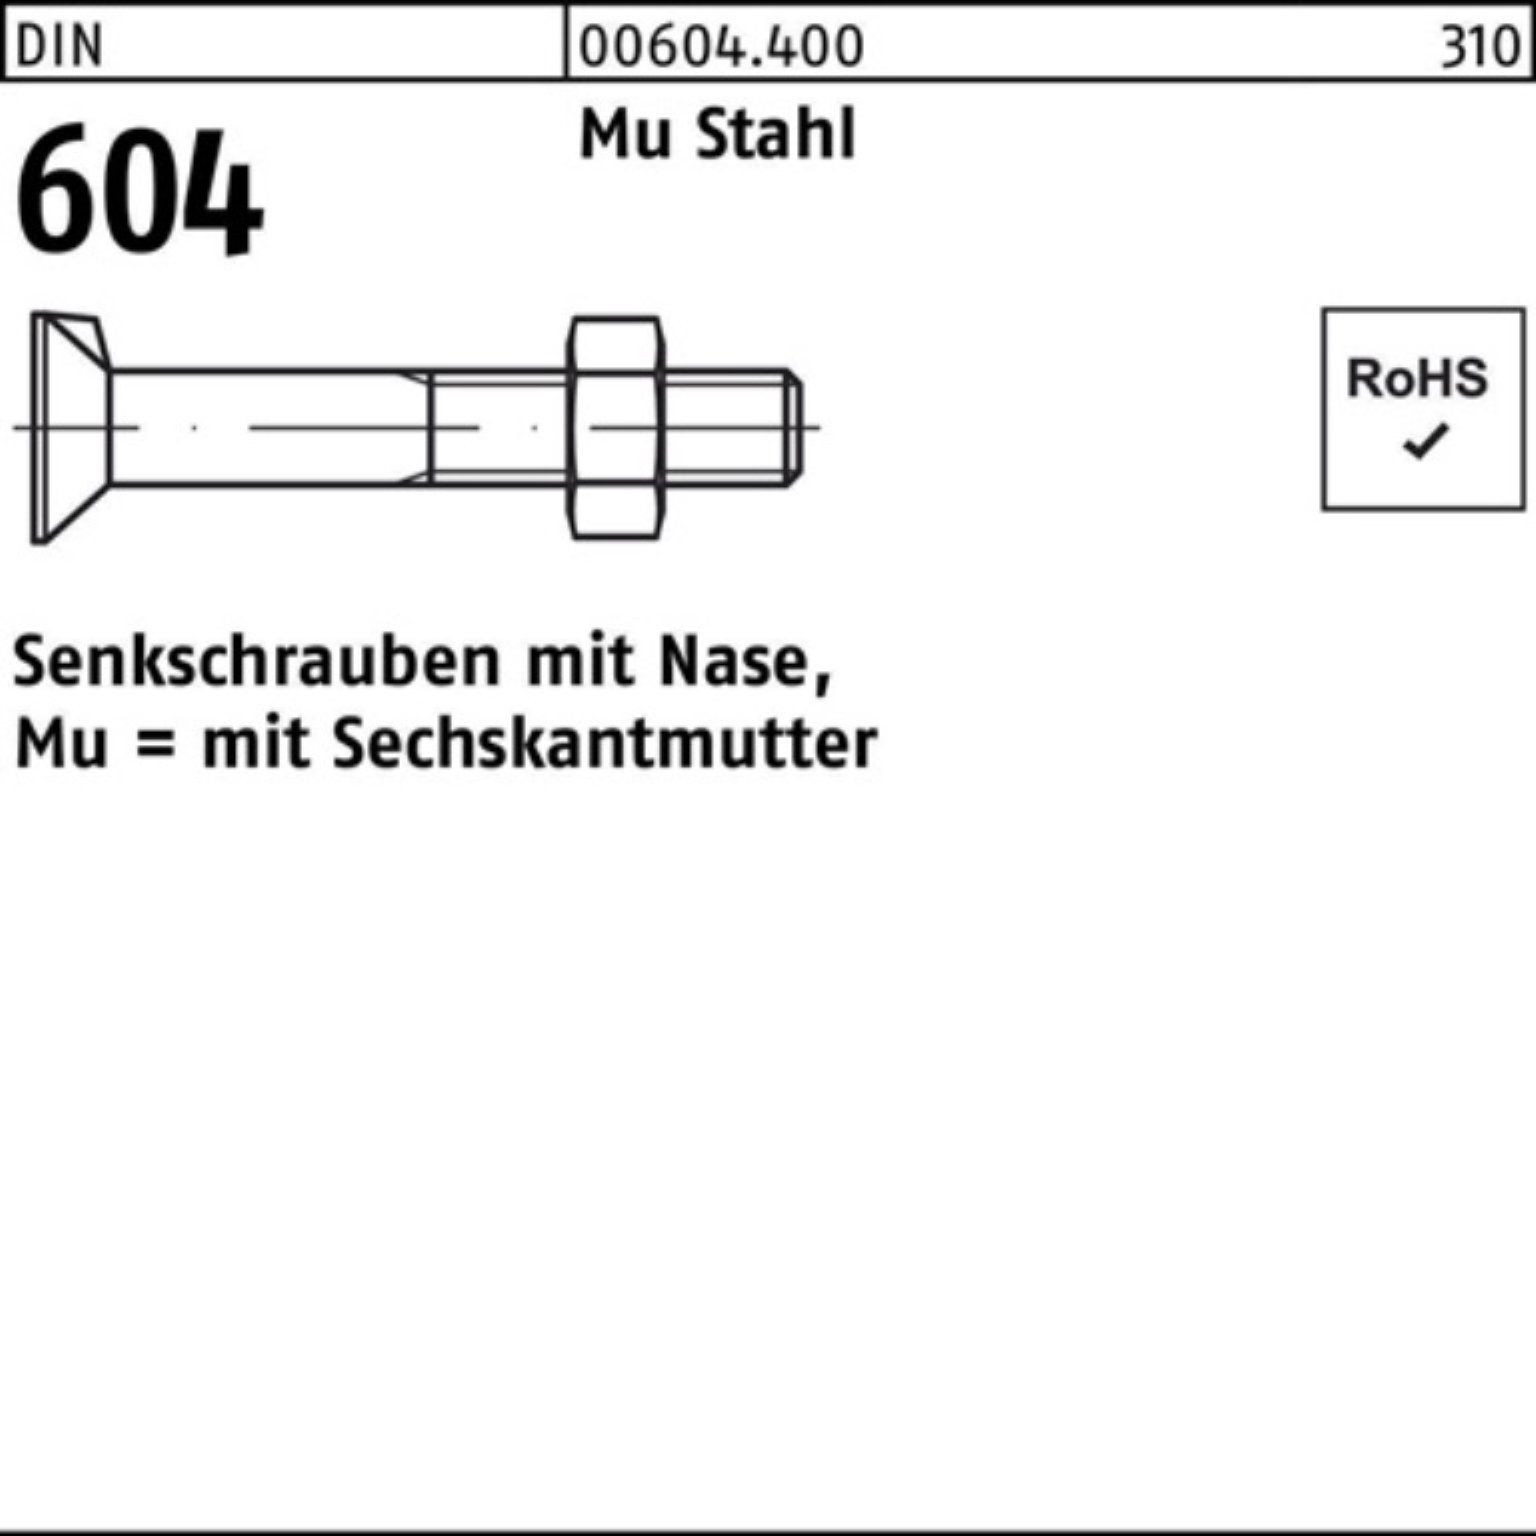 45 Mu 604 5 DIN Senkschraube M16x Stahl Reyher Pack Senkschraube 100er Nase/6-ktmutter 4.6